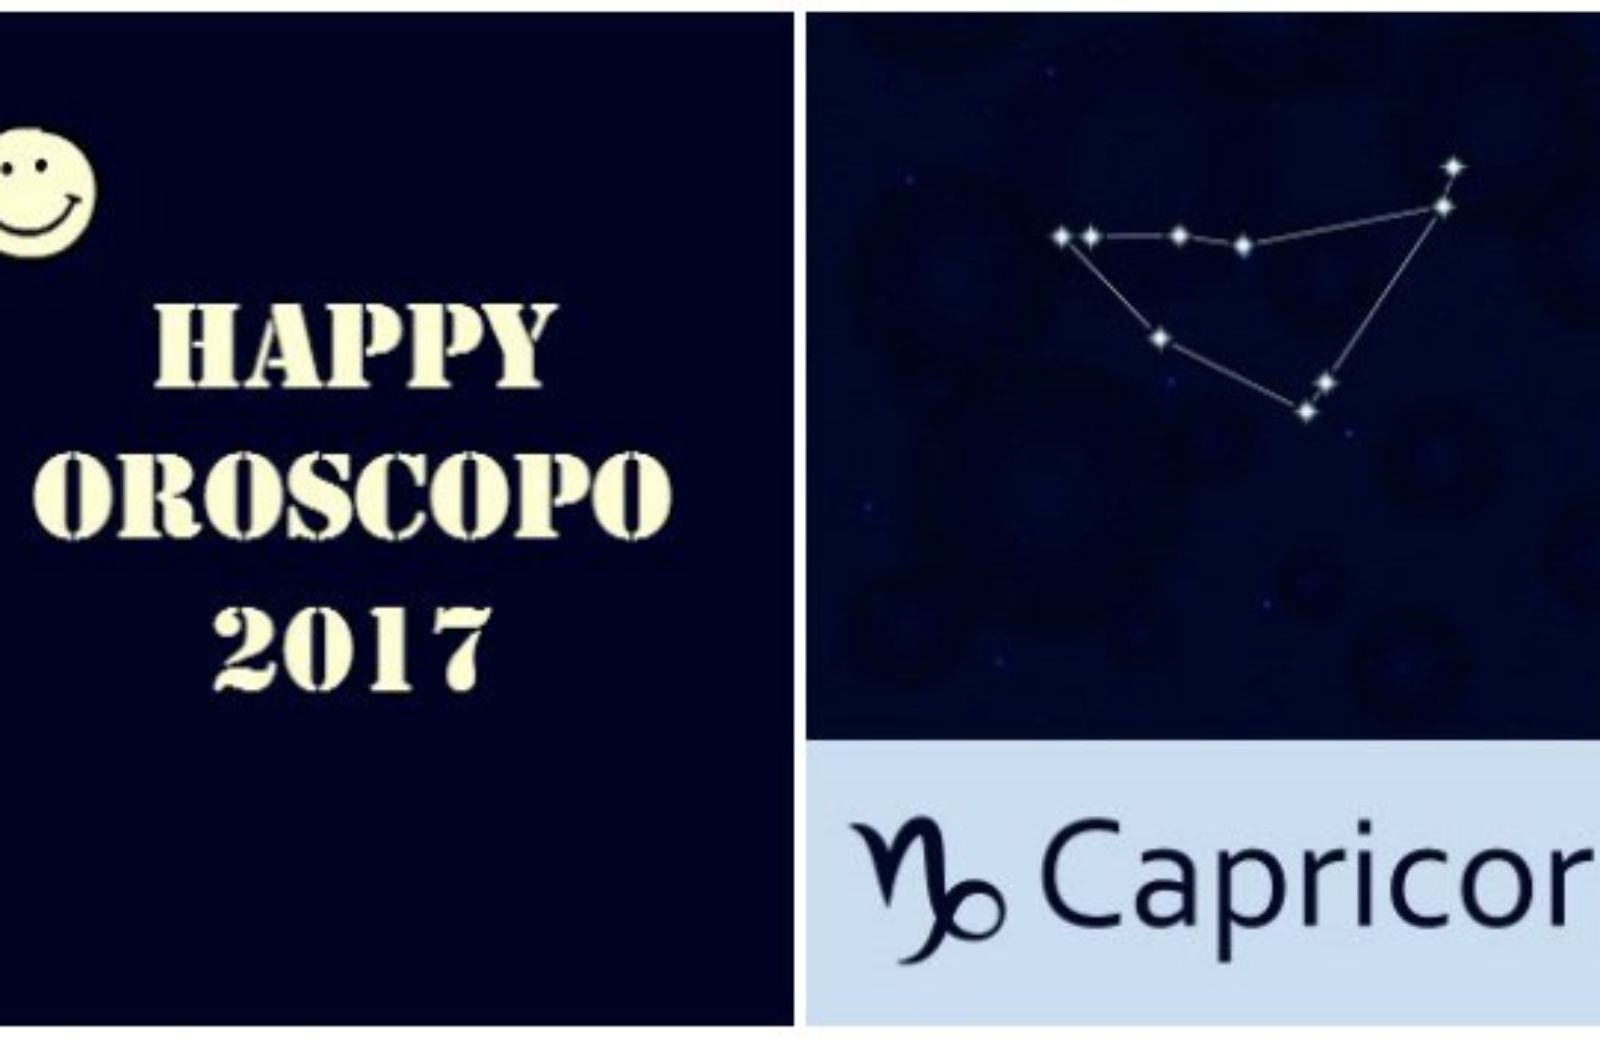 Happy Oroscopo 2017: il segno del Capricorno